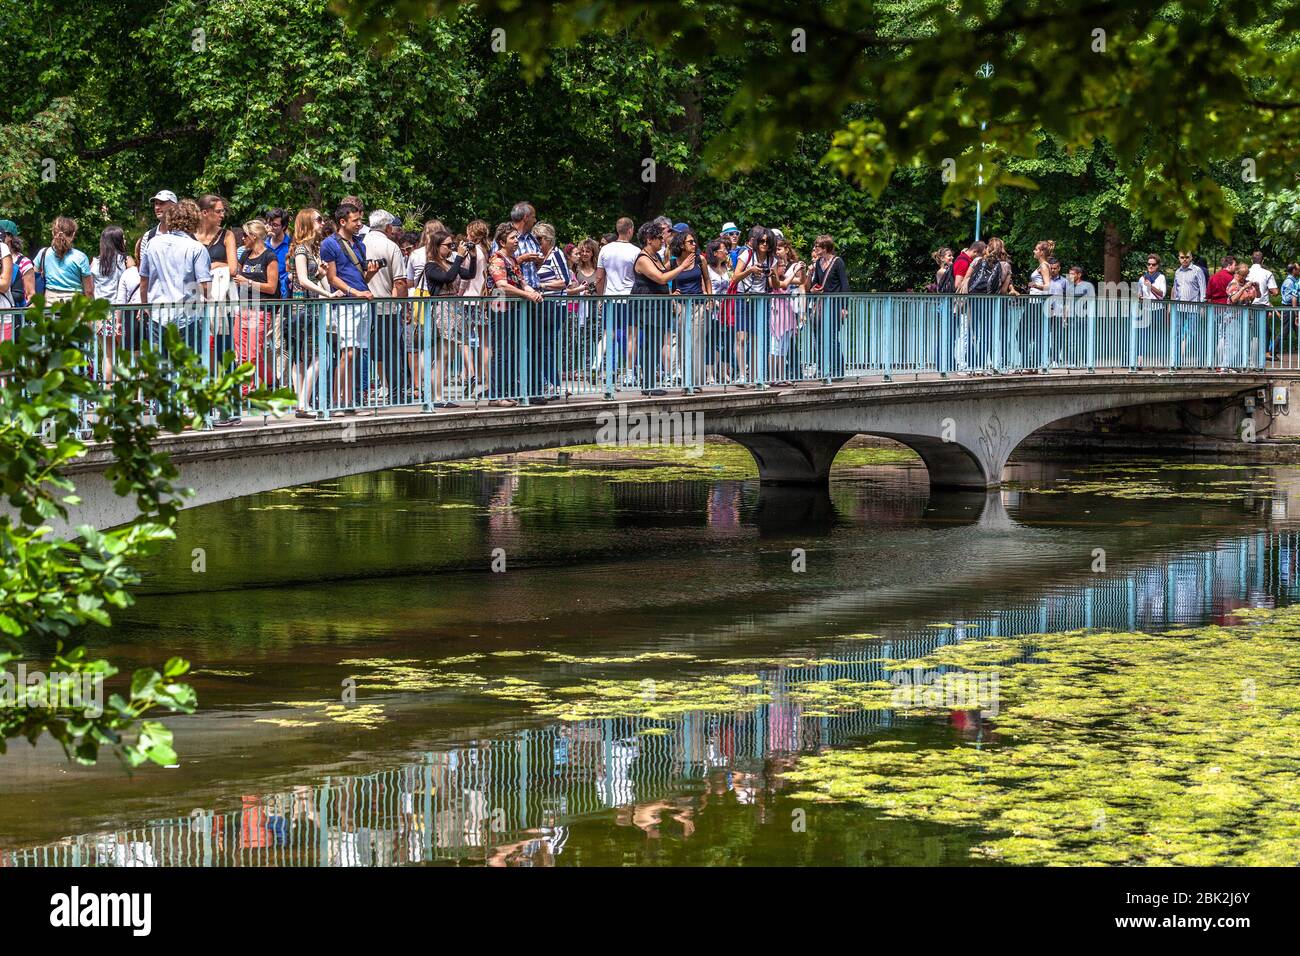 Puente peatonal del parque St James lleno de turistas y visitantes en un día de verano, Londres, Inglaterra, Reino Unido. Foto de stock